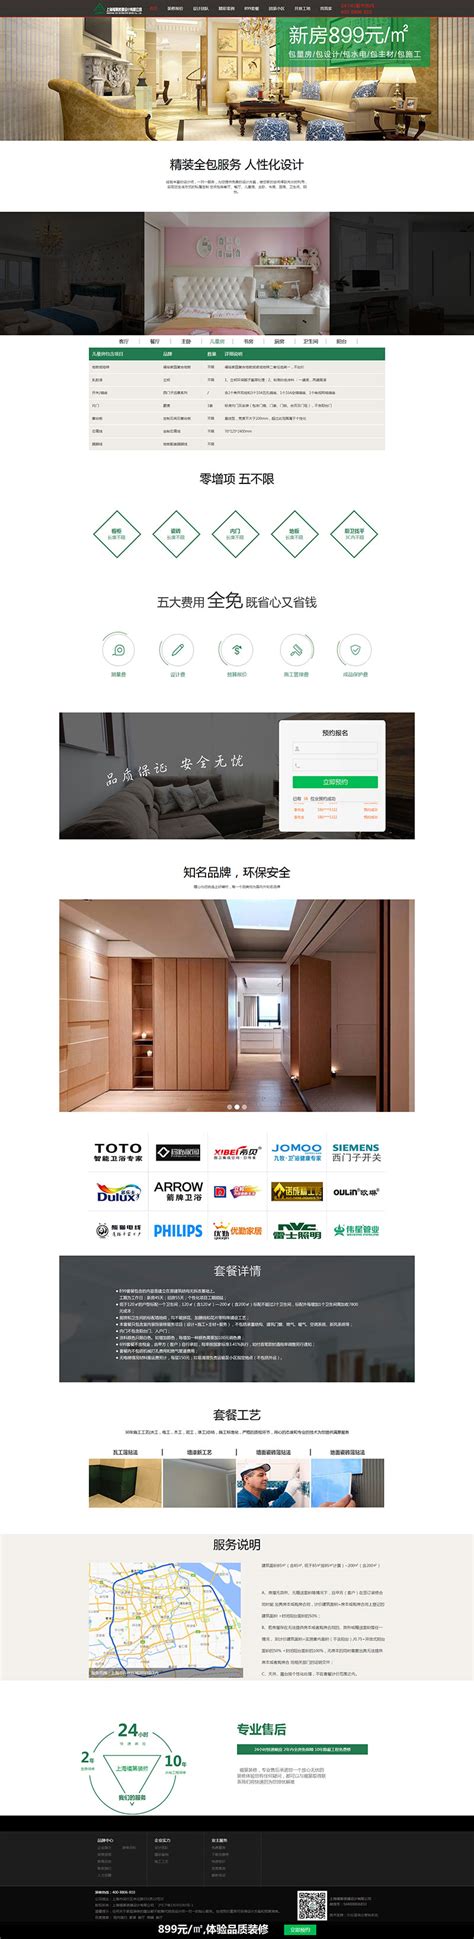 上海福第装璜设计官方网站-乐后屋装饰公司网站模板管理平台